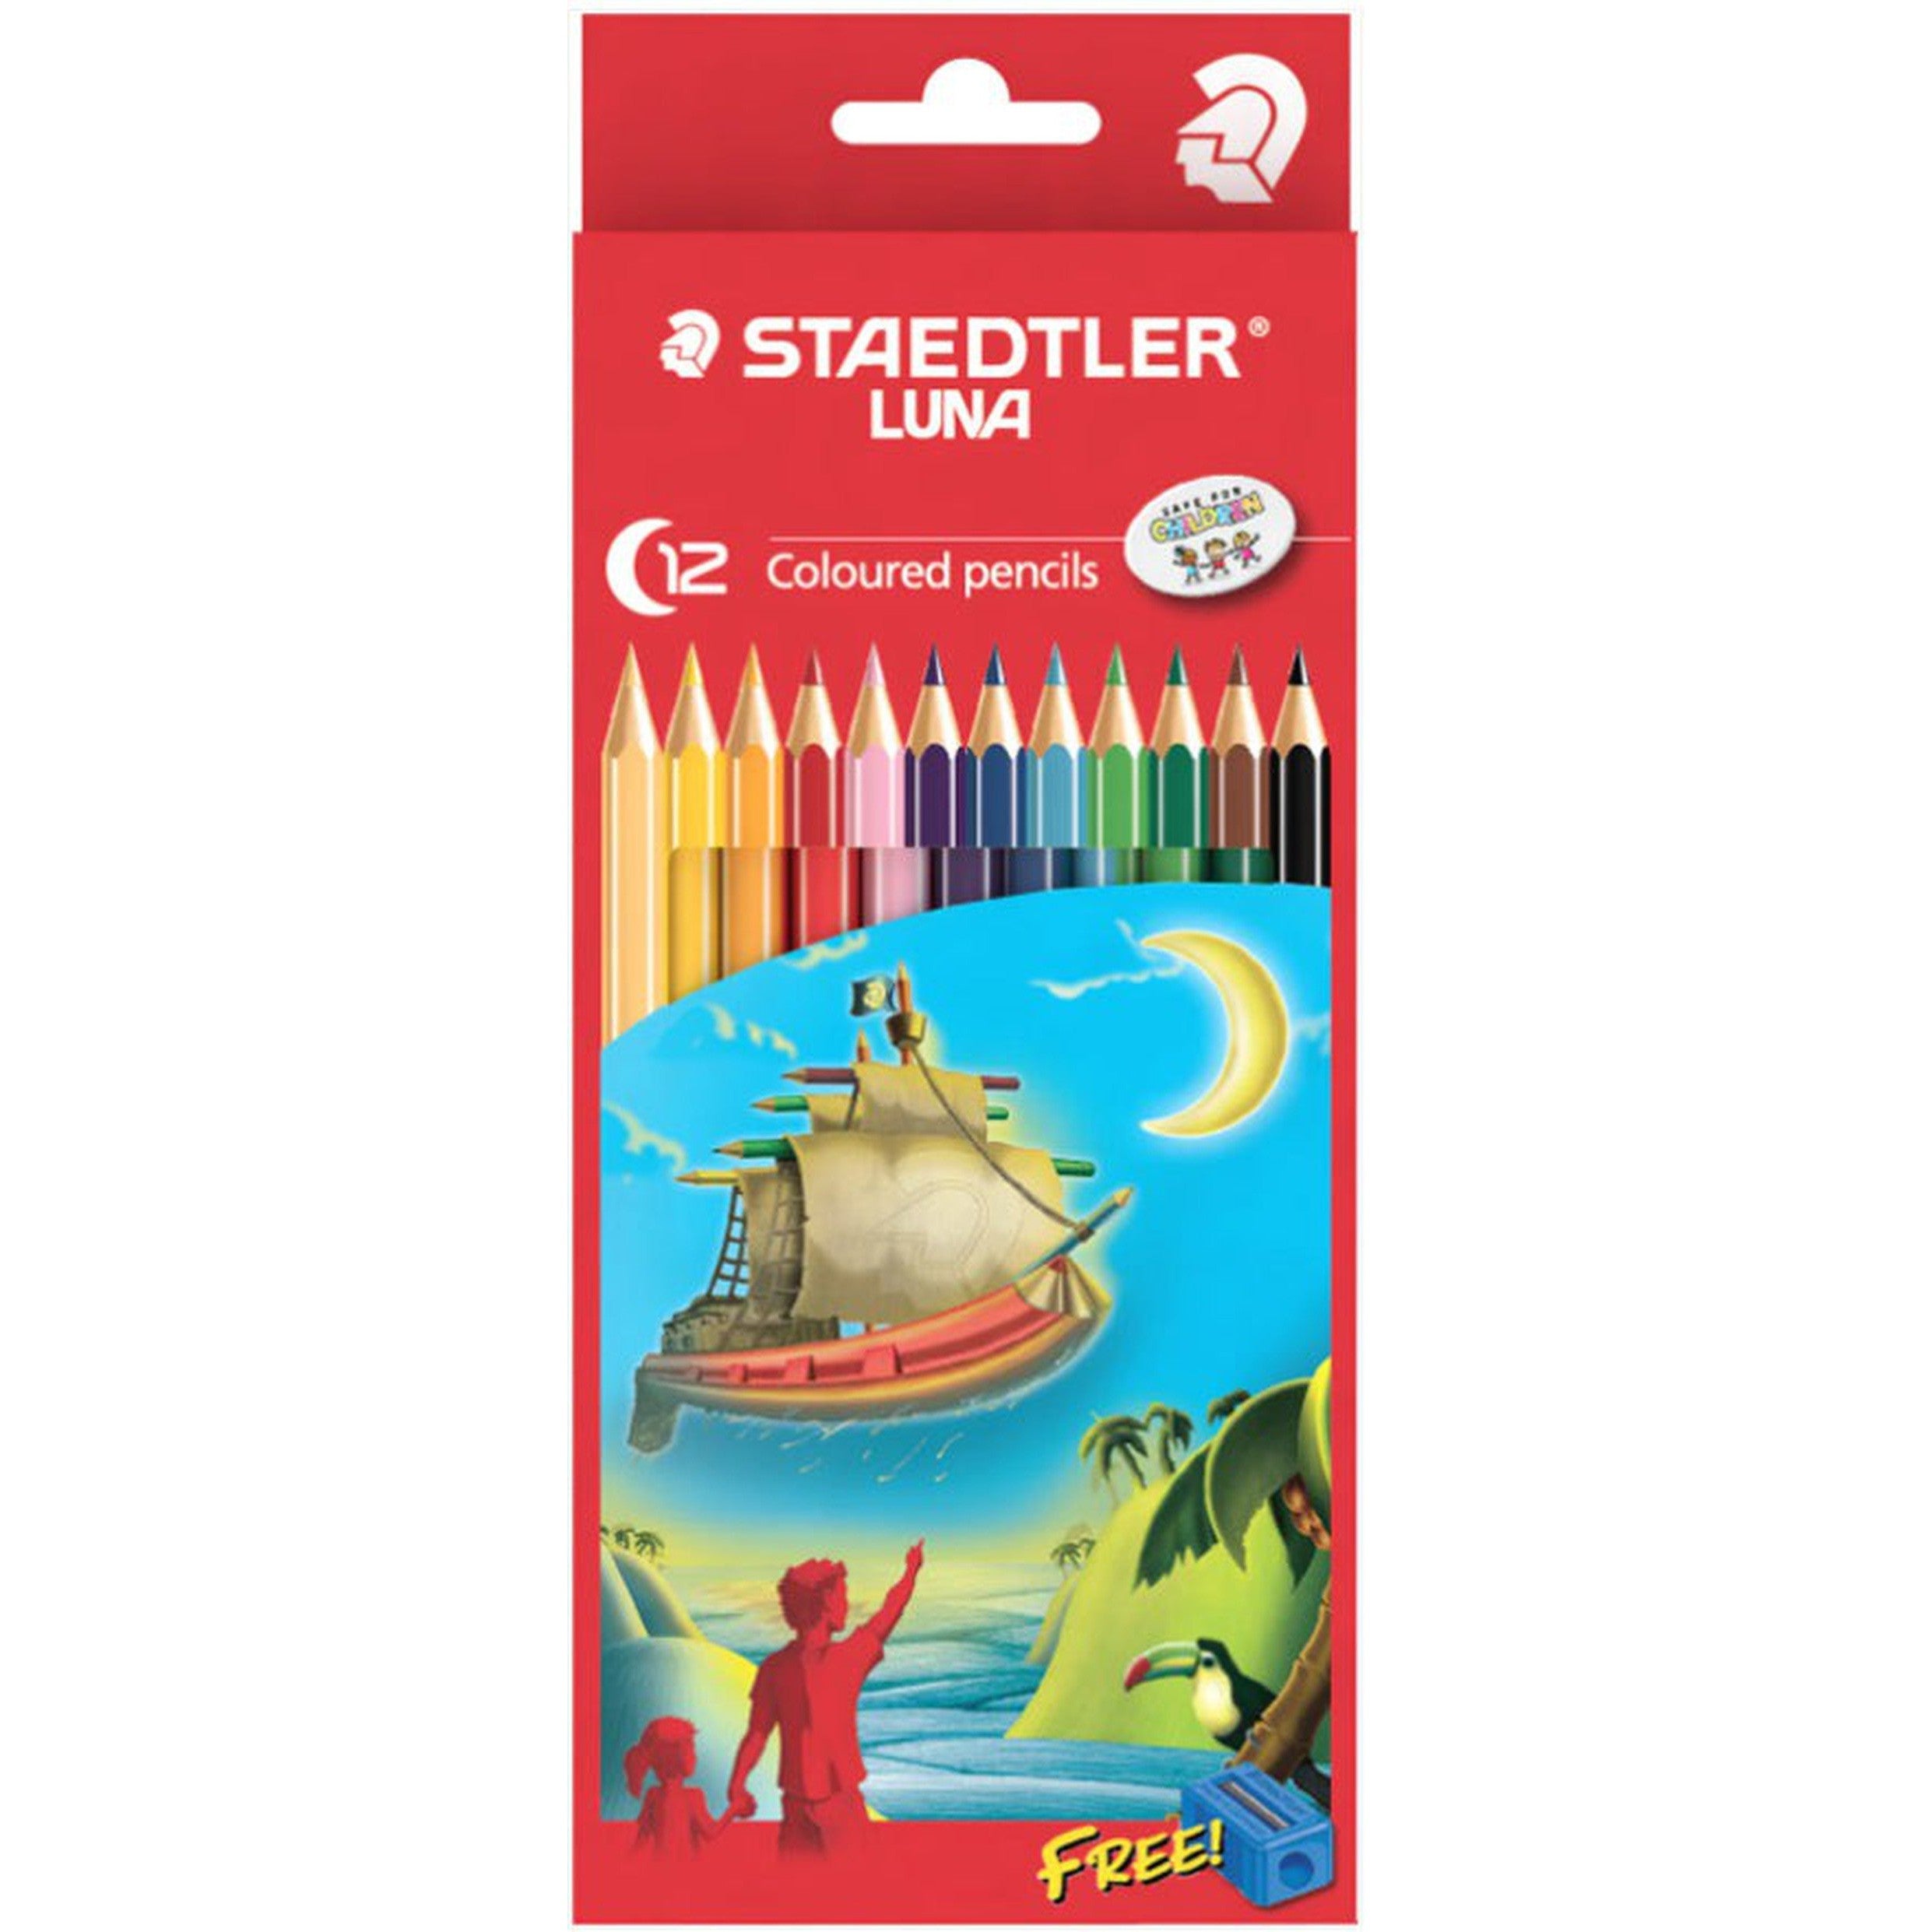 Staedtler Luna Colored Pencils 12 Colors-Pencils-Staedtler-Star Light Kuwait